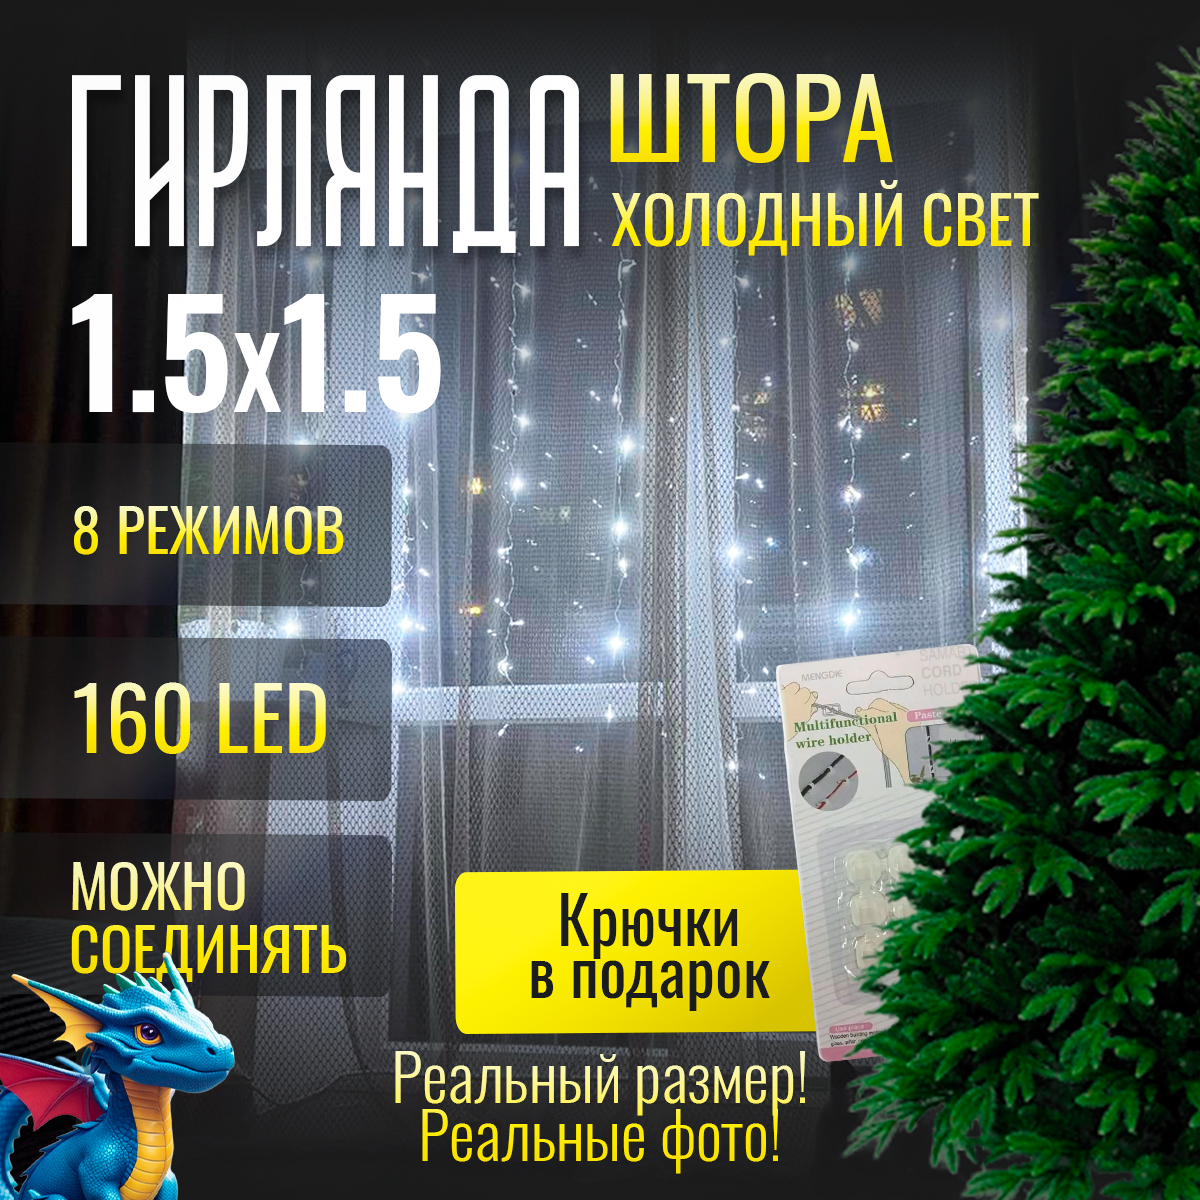 Электрогирлянда Занавес Штора 320 лампочек 3 метра питание от сети 220 В + подарок